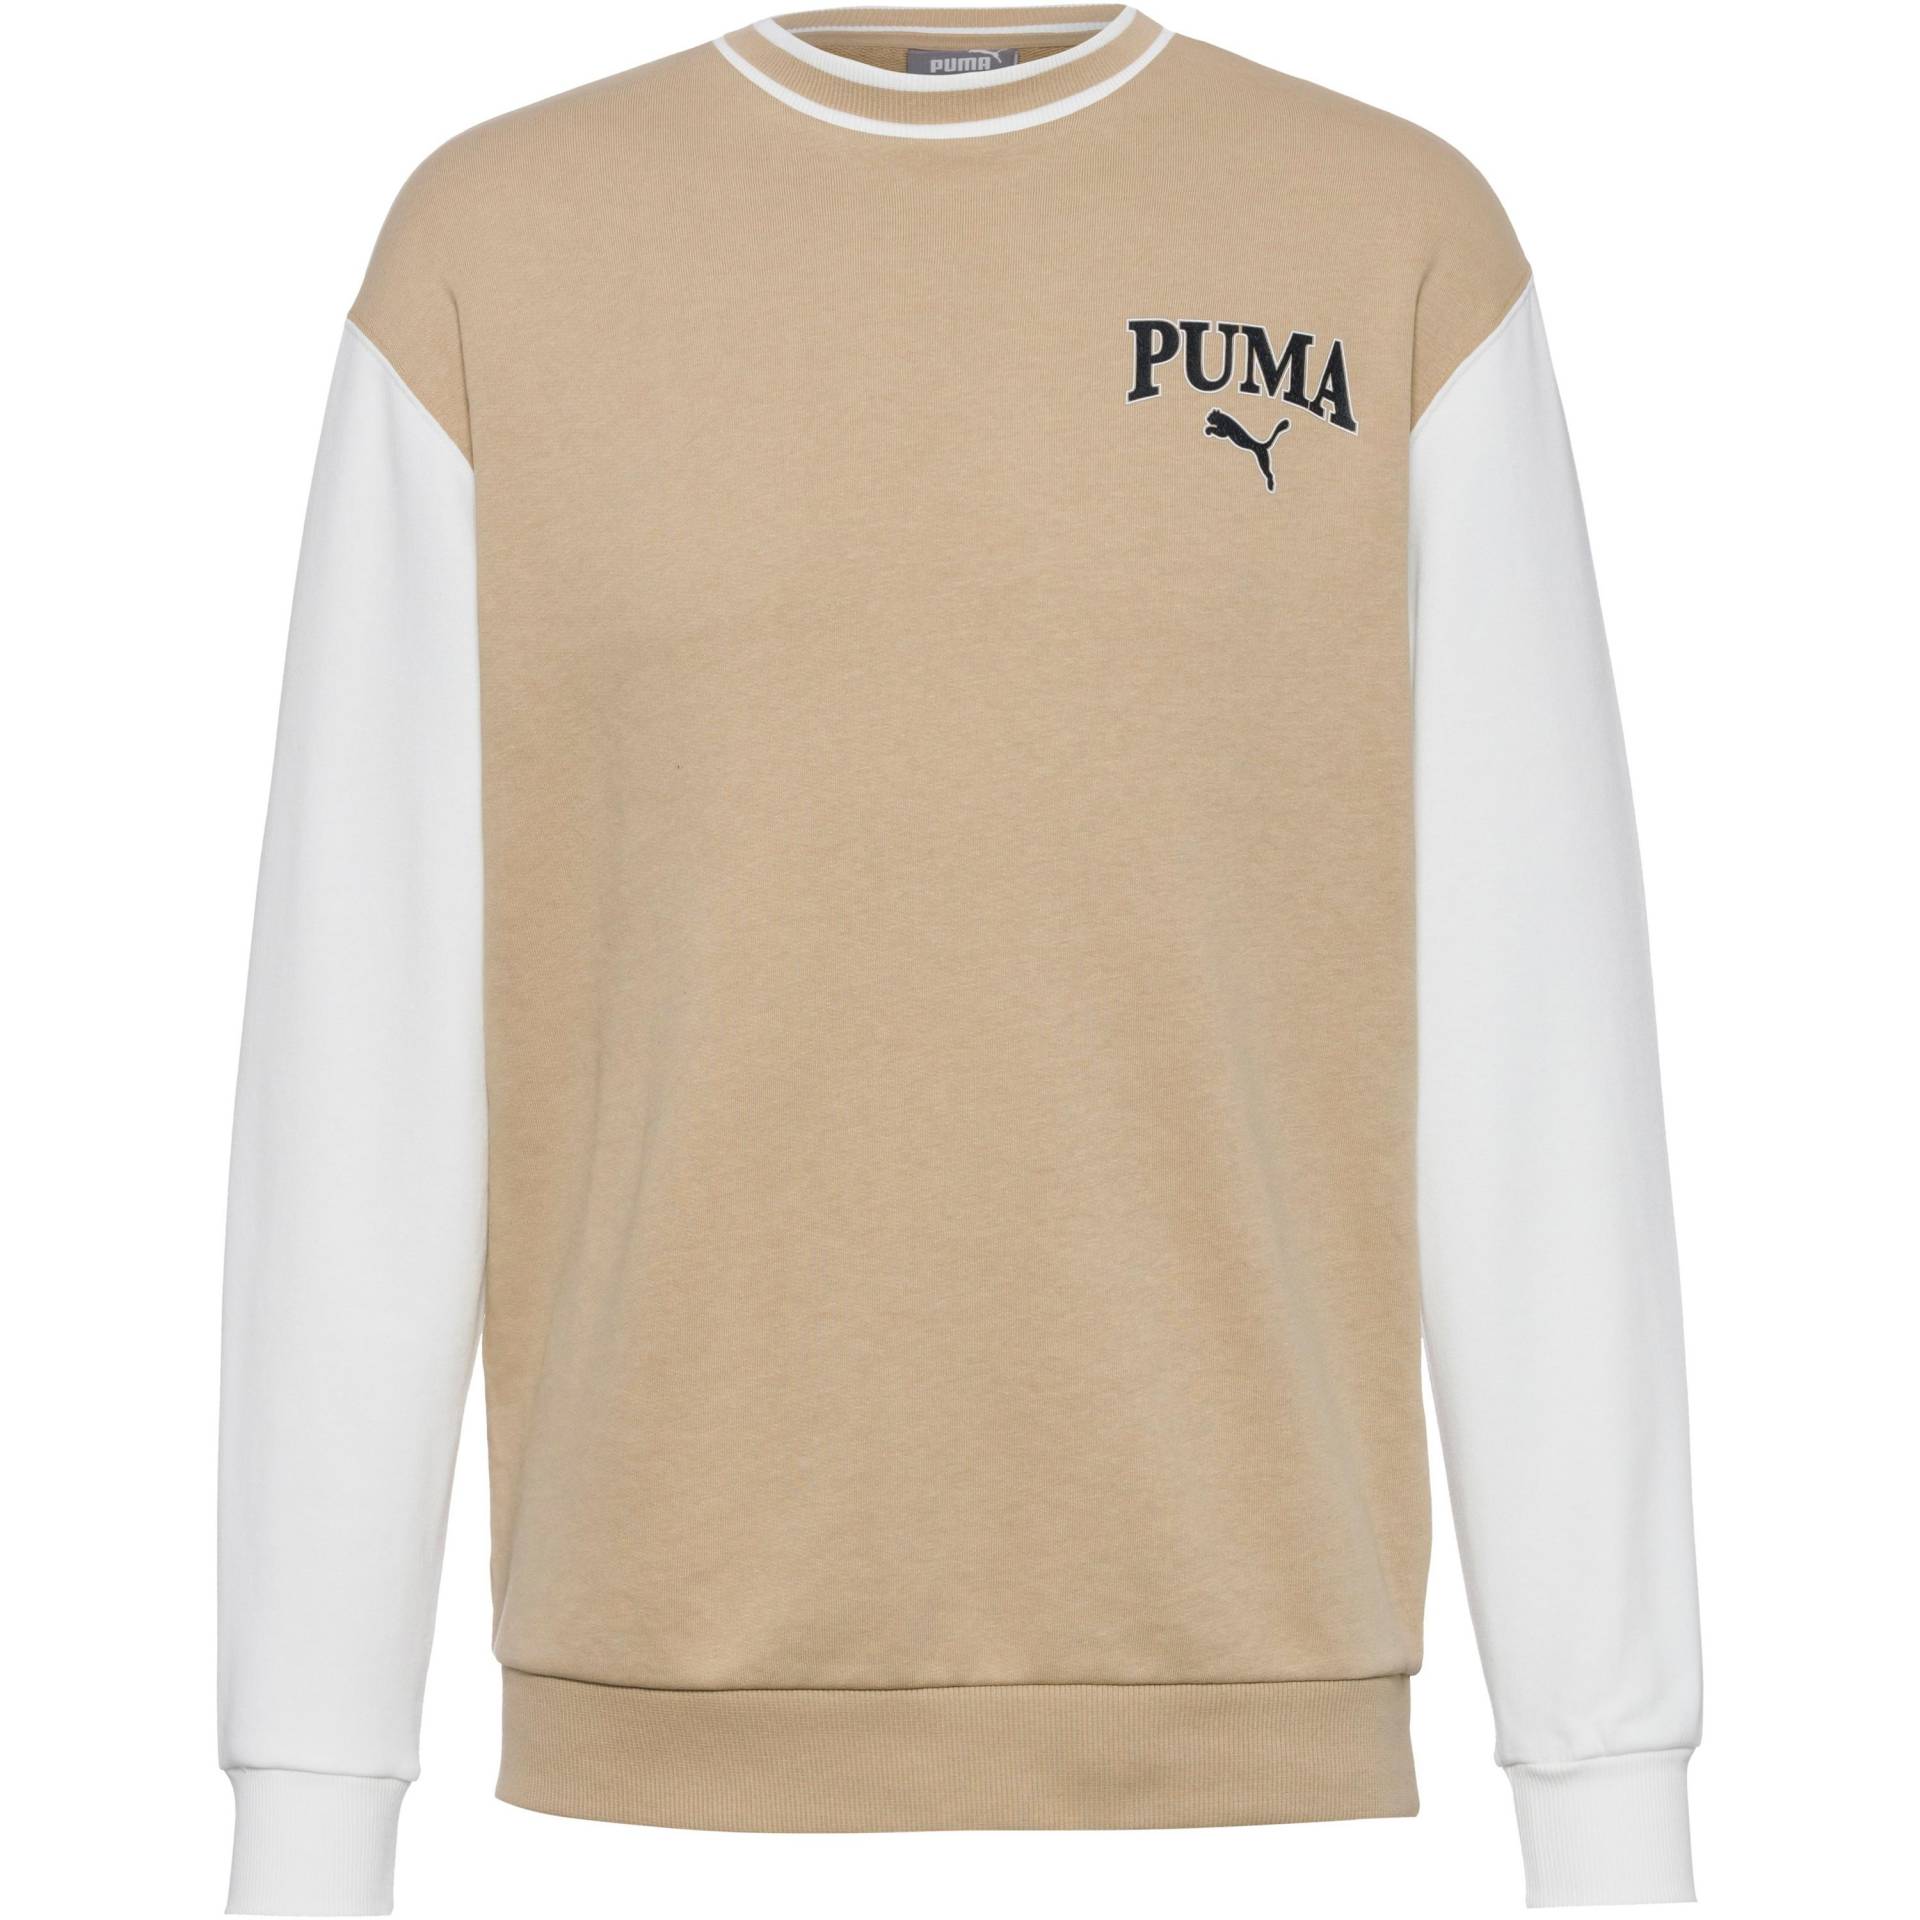 PUMA Squad Sweatshirt Herren von Puma